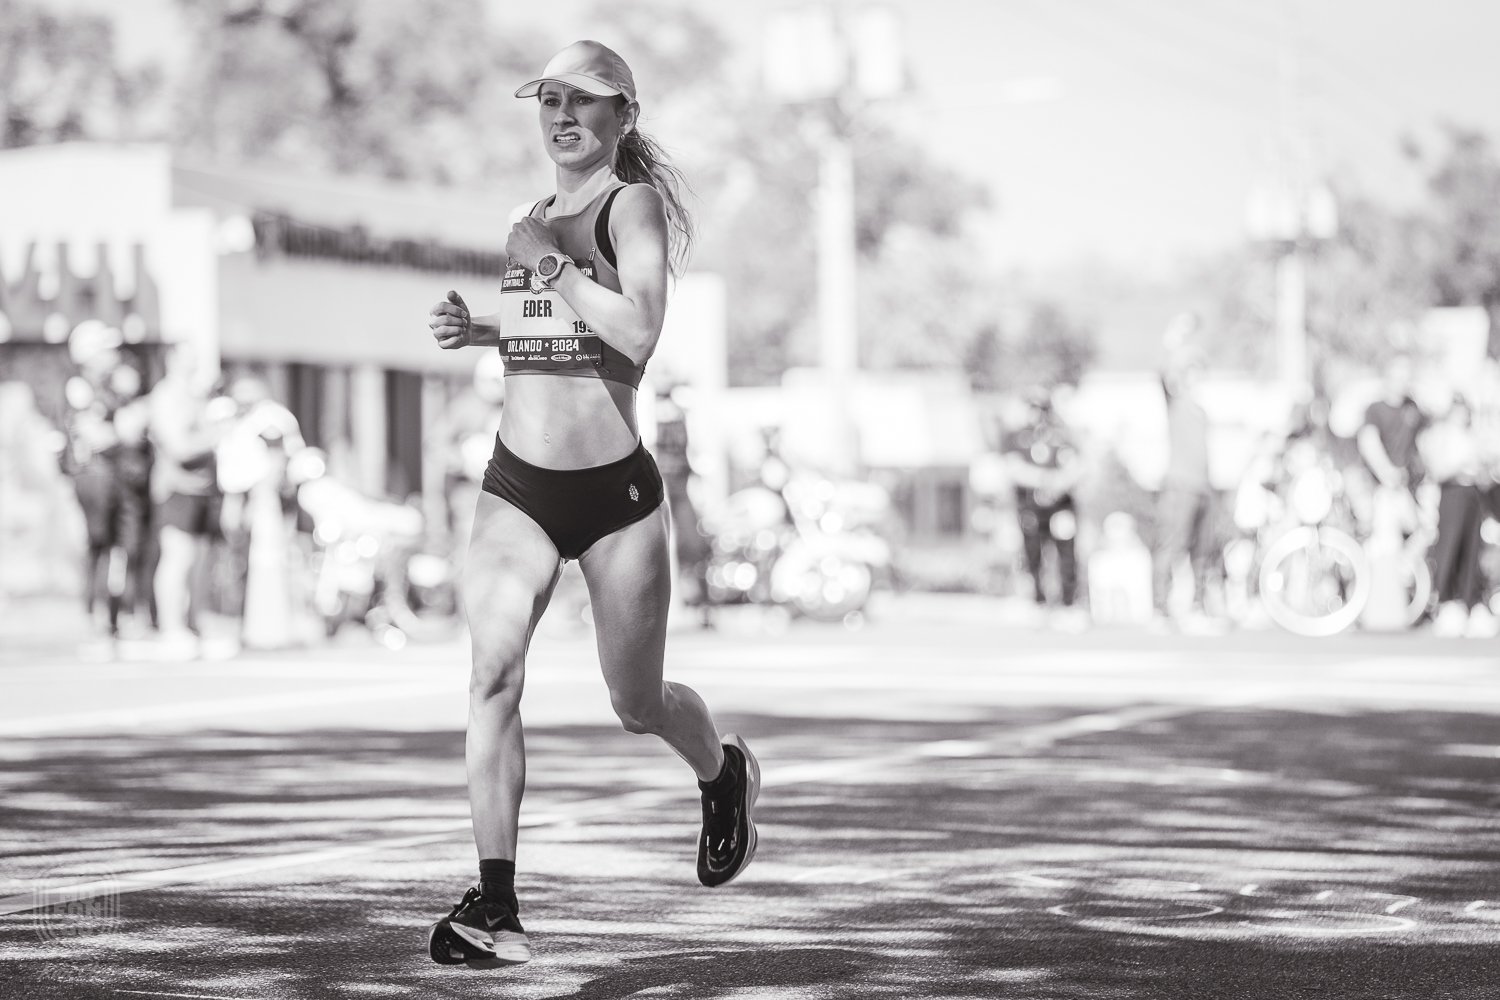  23. Veronica Eder (02:35:46), en su primera clasificatoria para maratón olímpico. 